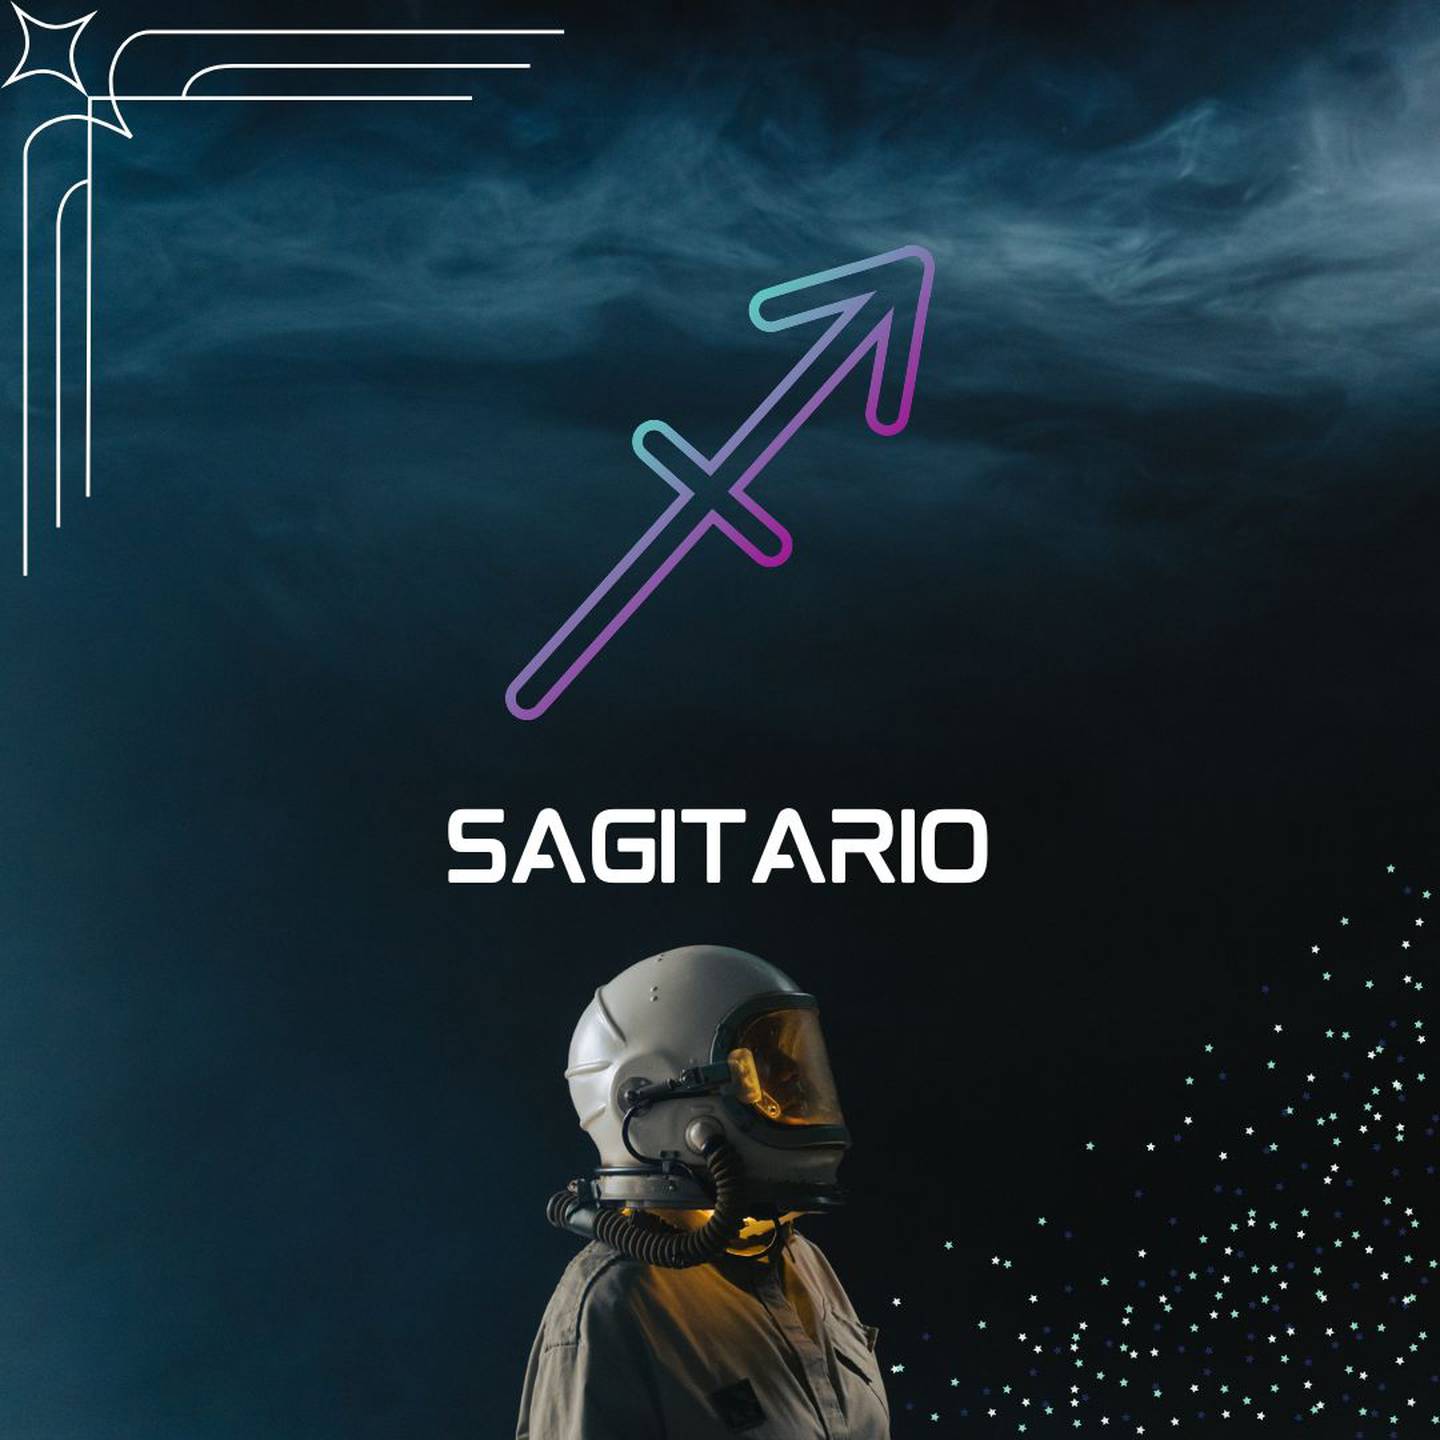 Sobre un fondo oscuro, con humo en la parte superior, aparece el símbolo de Sagitario. Al centro aparece el nombre del signo en color blanco y todavía más abajo, un astronauta está mirando hacia la derecha.